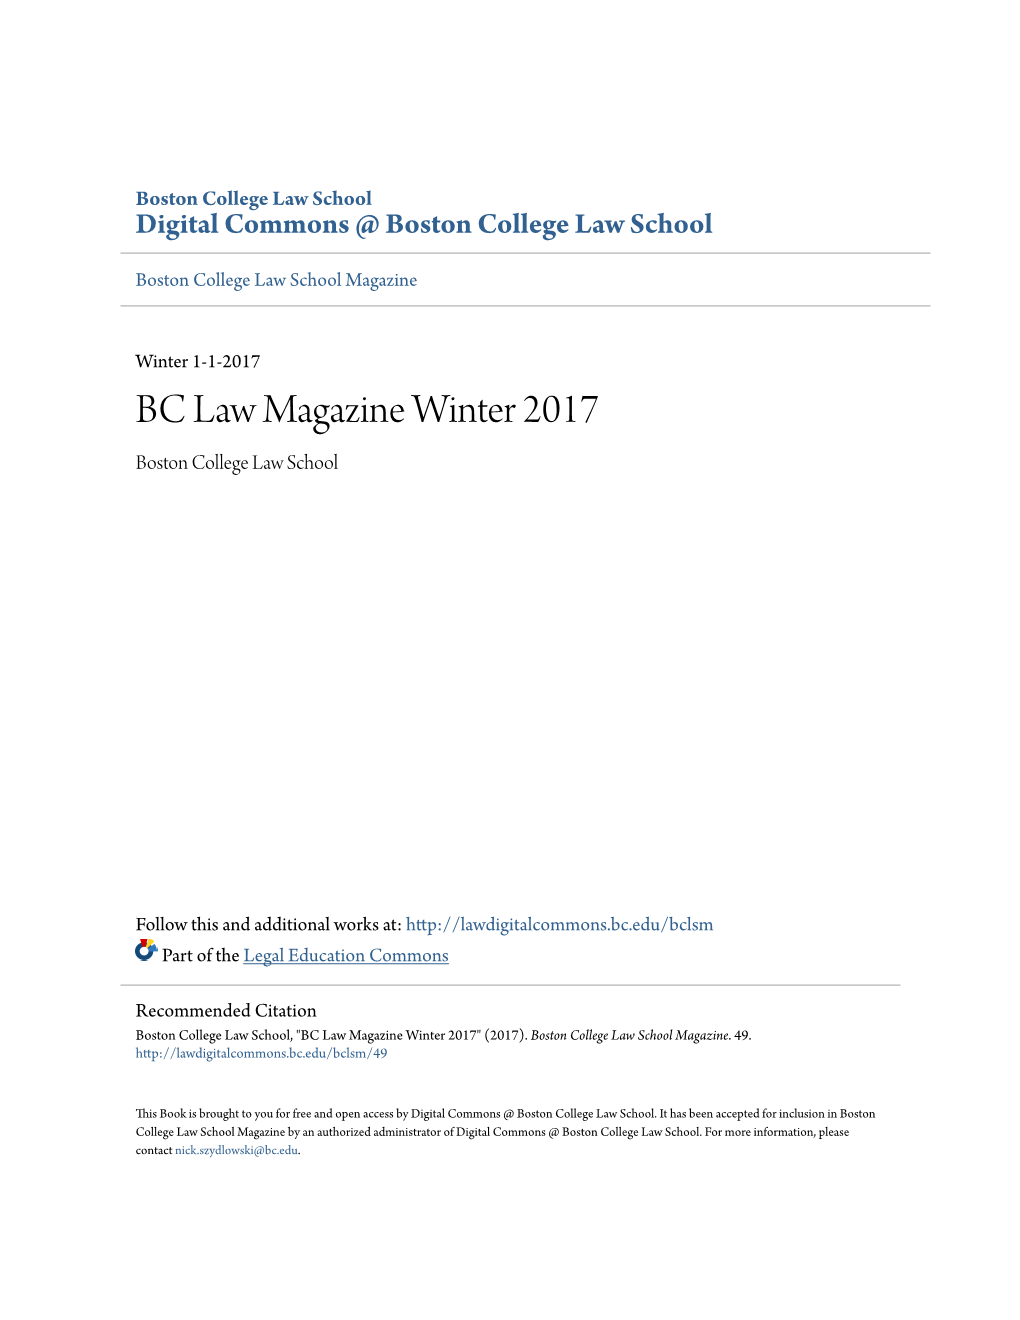 BC Law Magazine Winter 2017 Boston College Law School